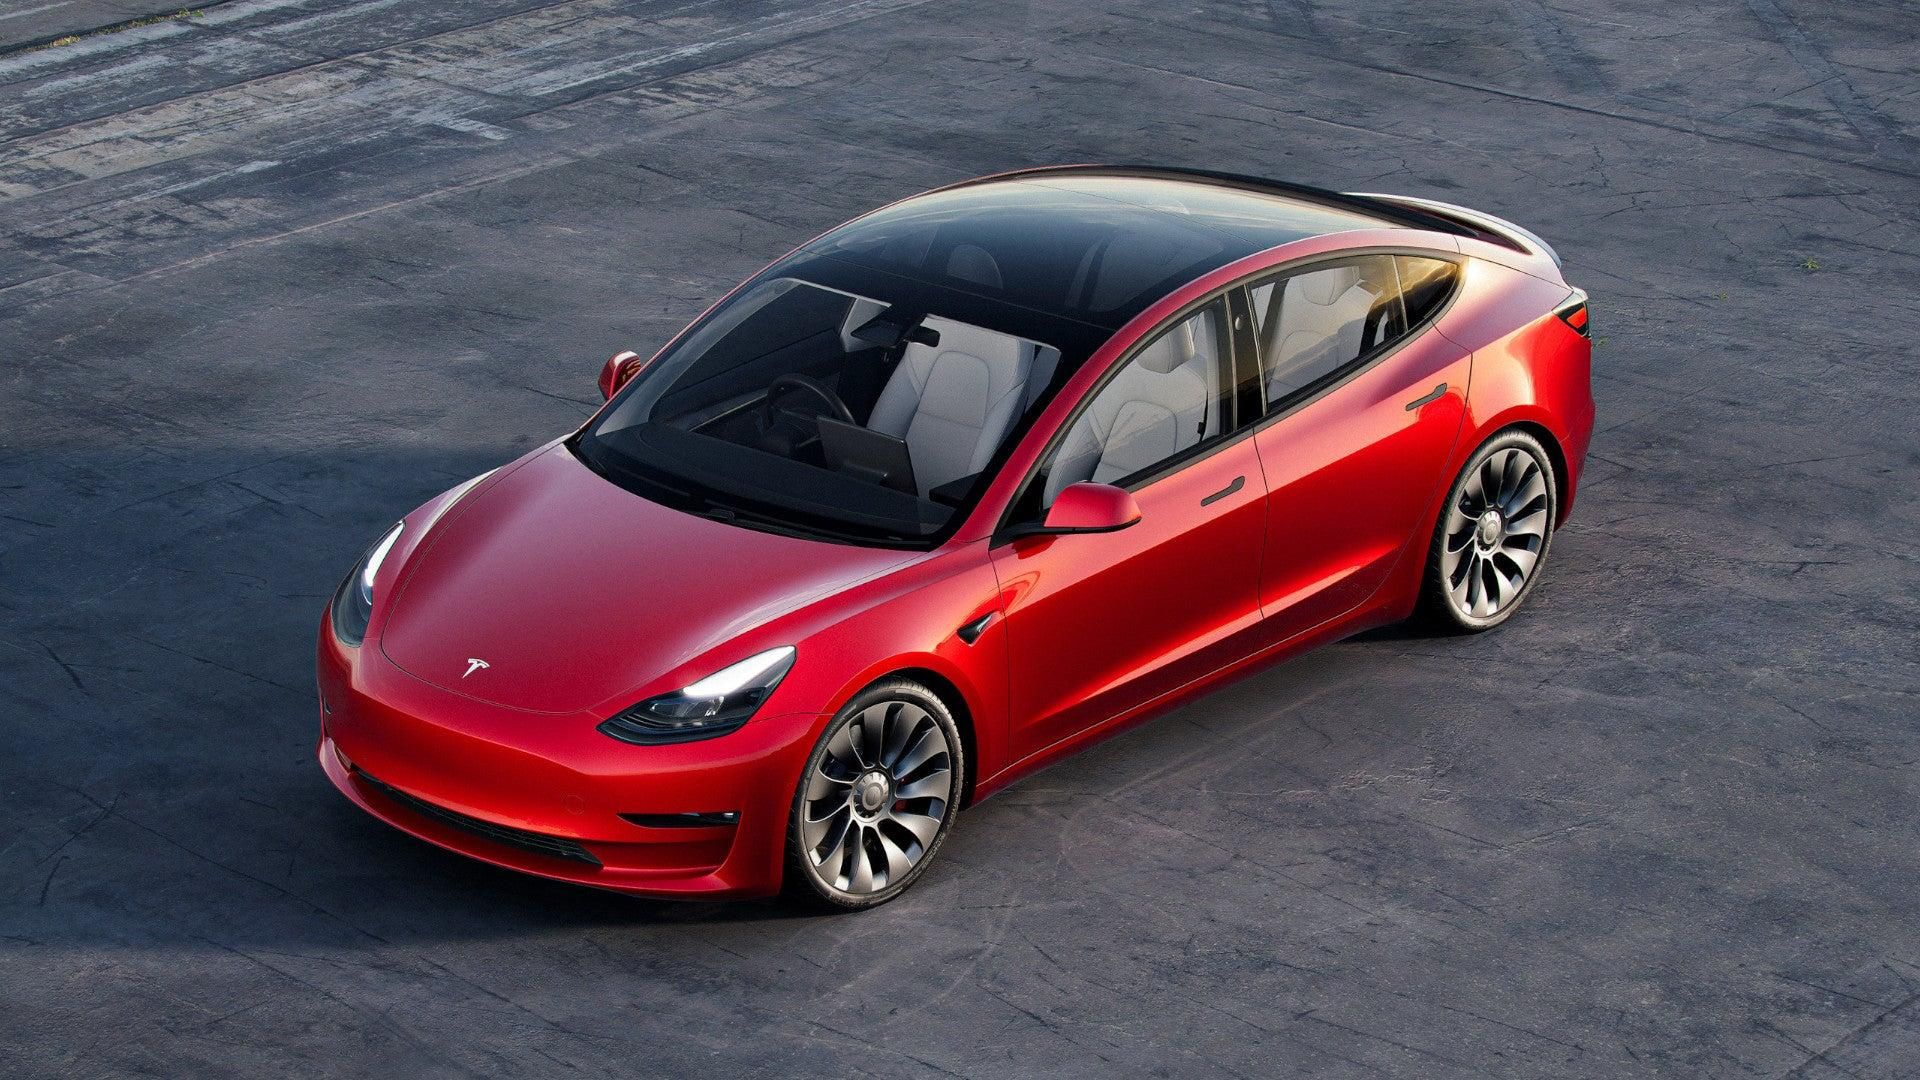 Tesla знову відкликає тисячі електромобілів: цього разу проблема справді серйозна - Новини технологій - Техно